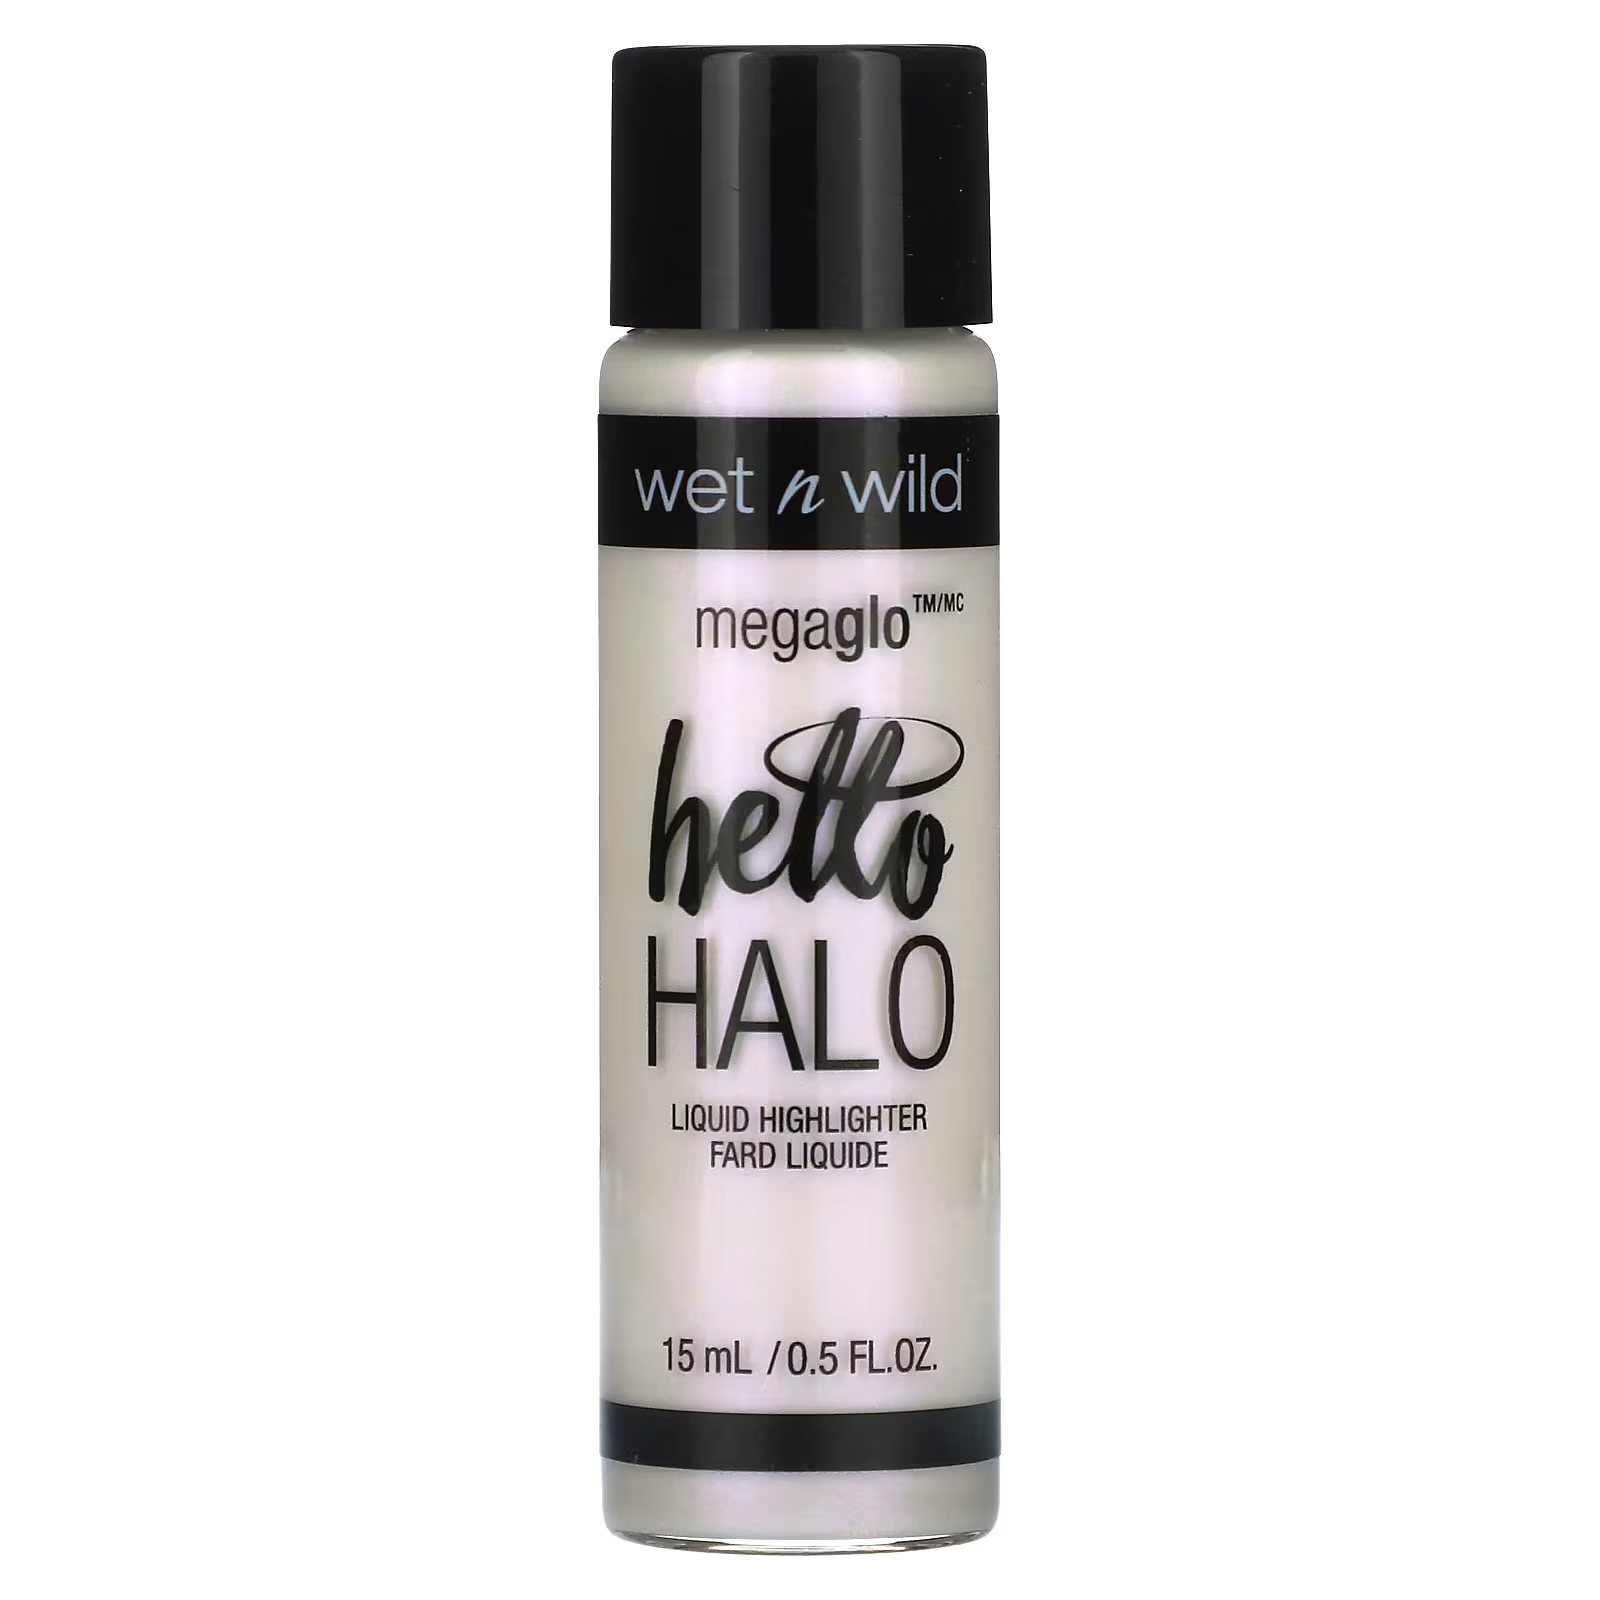 Жидкий хайлайтер Wet n Wild MegaGlo Hello Halo 303A, галографический, 0,5 жидк. унции (15 мл)